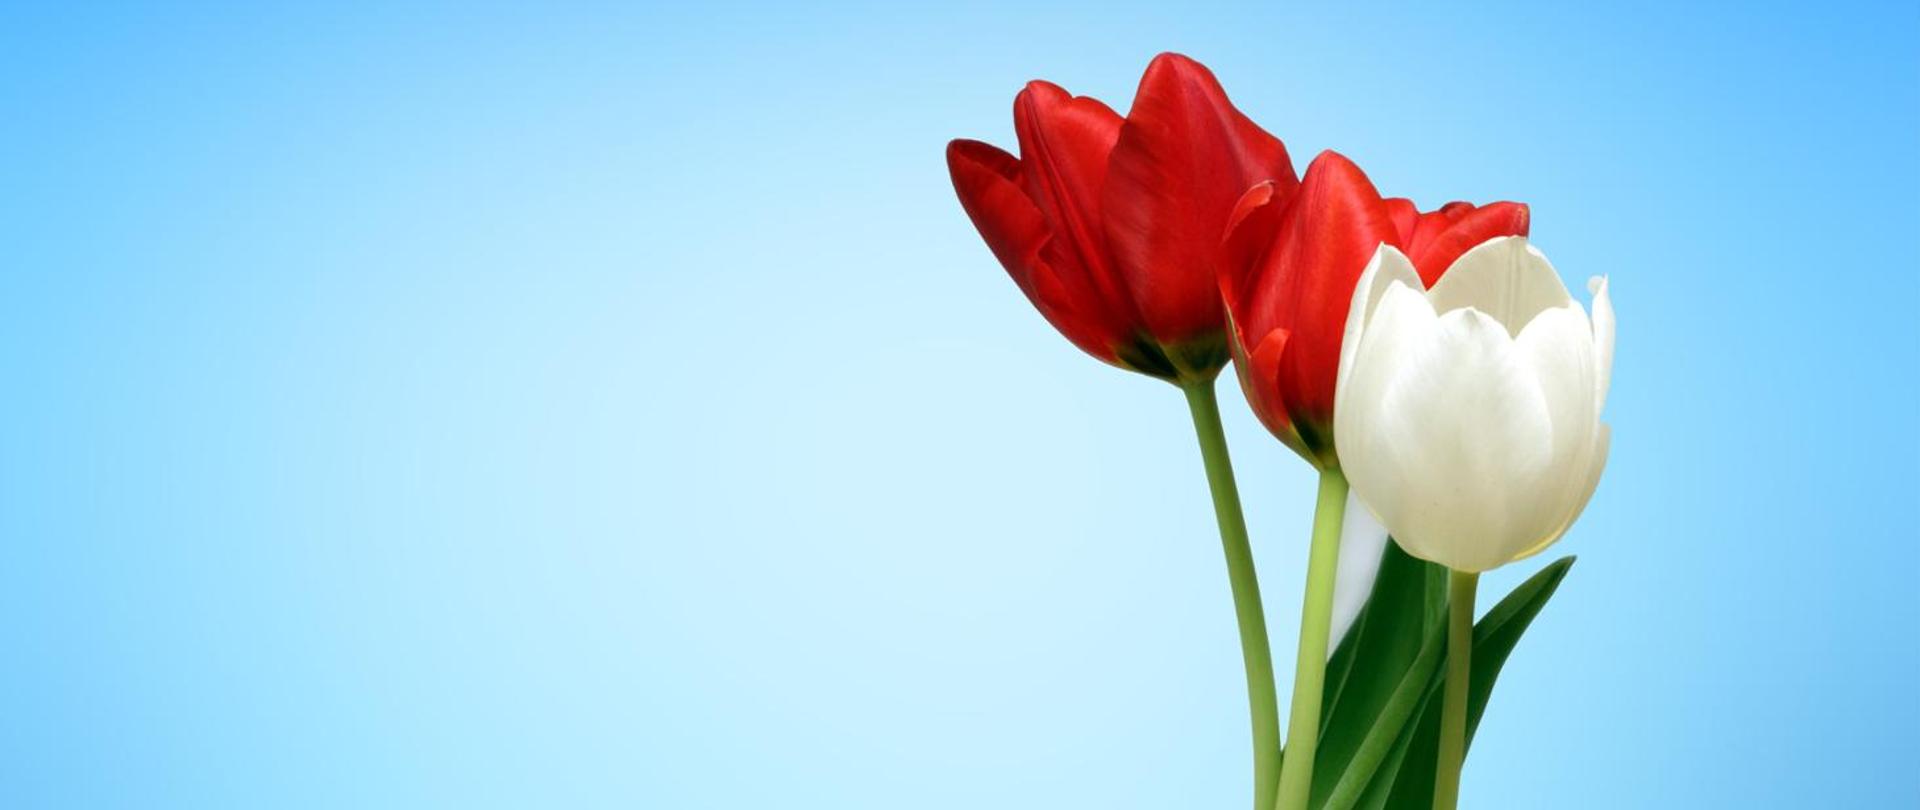 Zdjęcie przedstawia trzy tulipany, dwa koloru czerwonego, jeden biały umieszczone na niebieskim tle z prawej strony fotografii